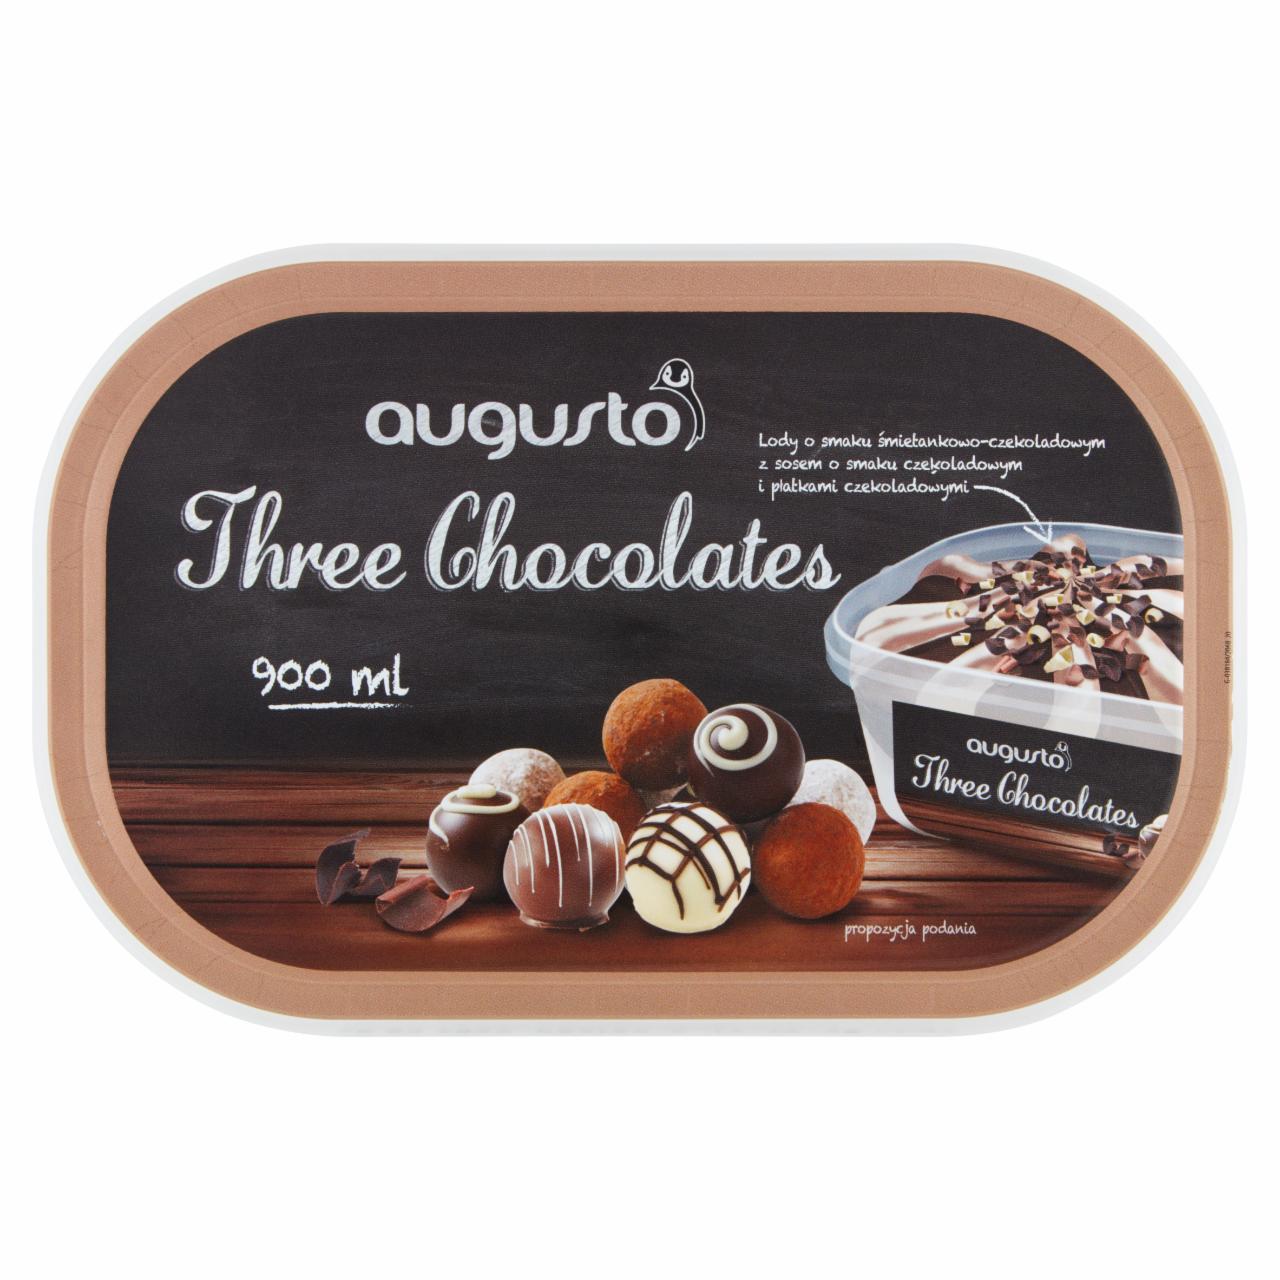 Zdjęcia - Augusto Three Chocolates Lody 900 ml